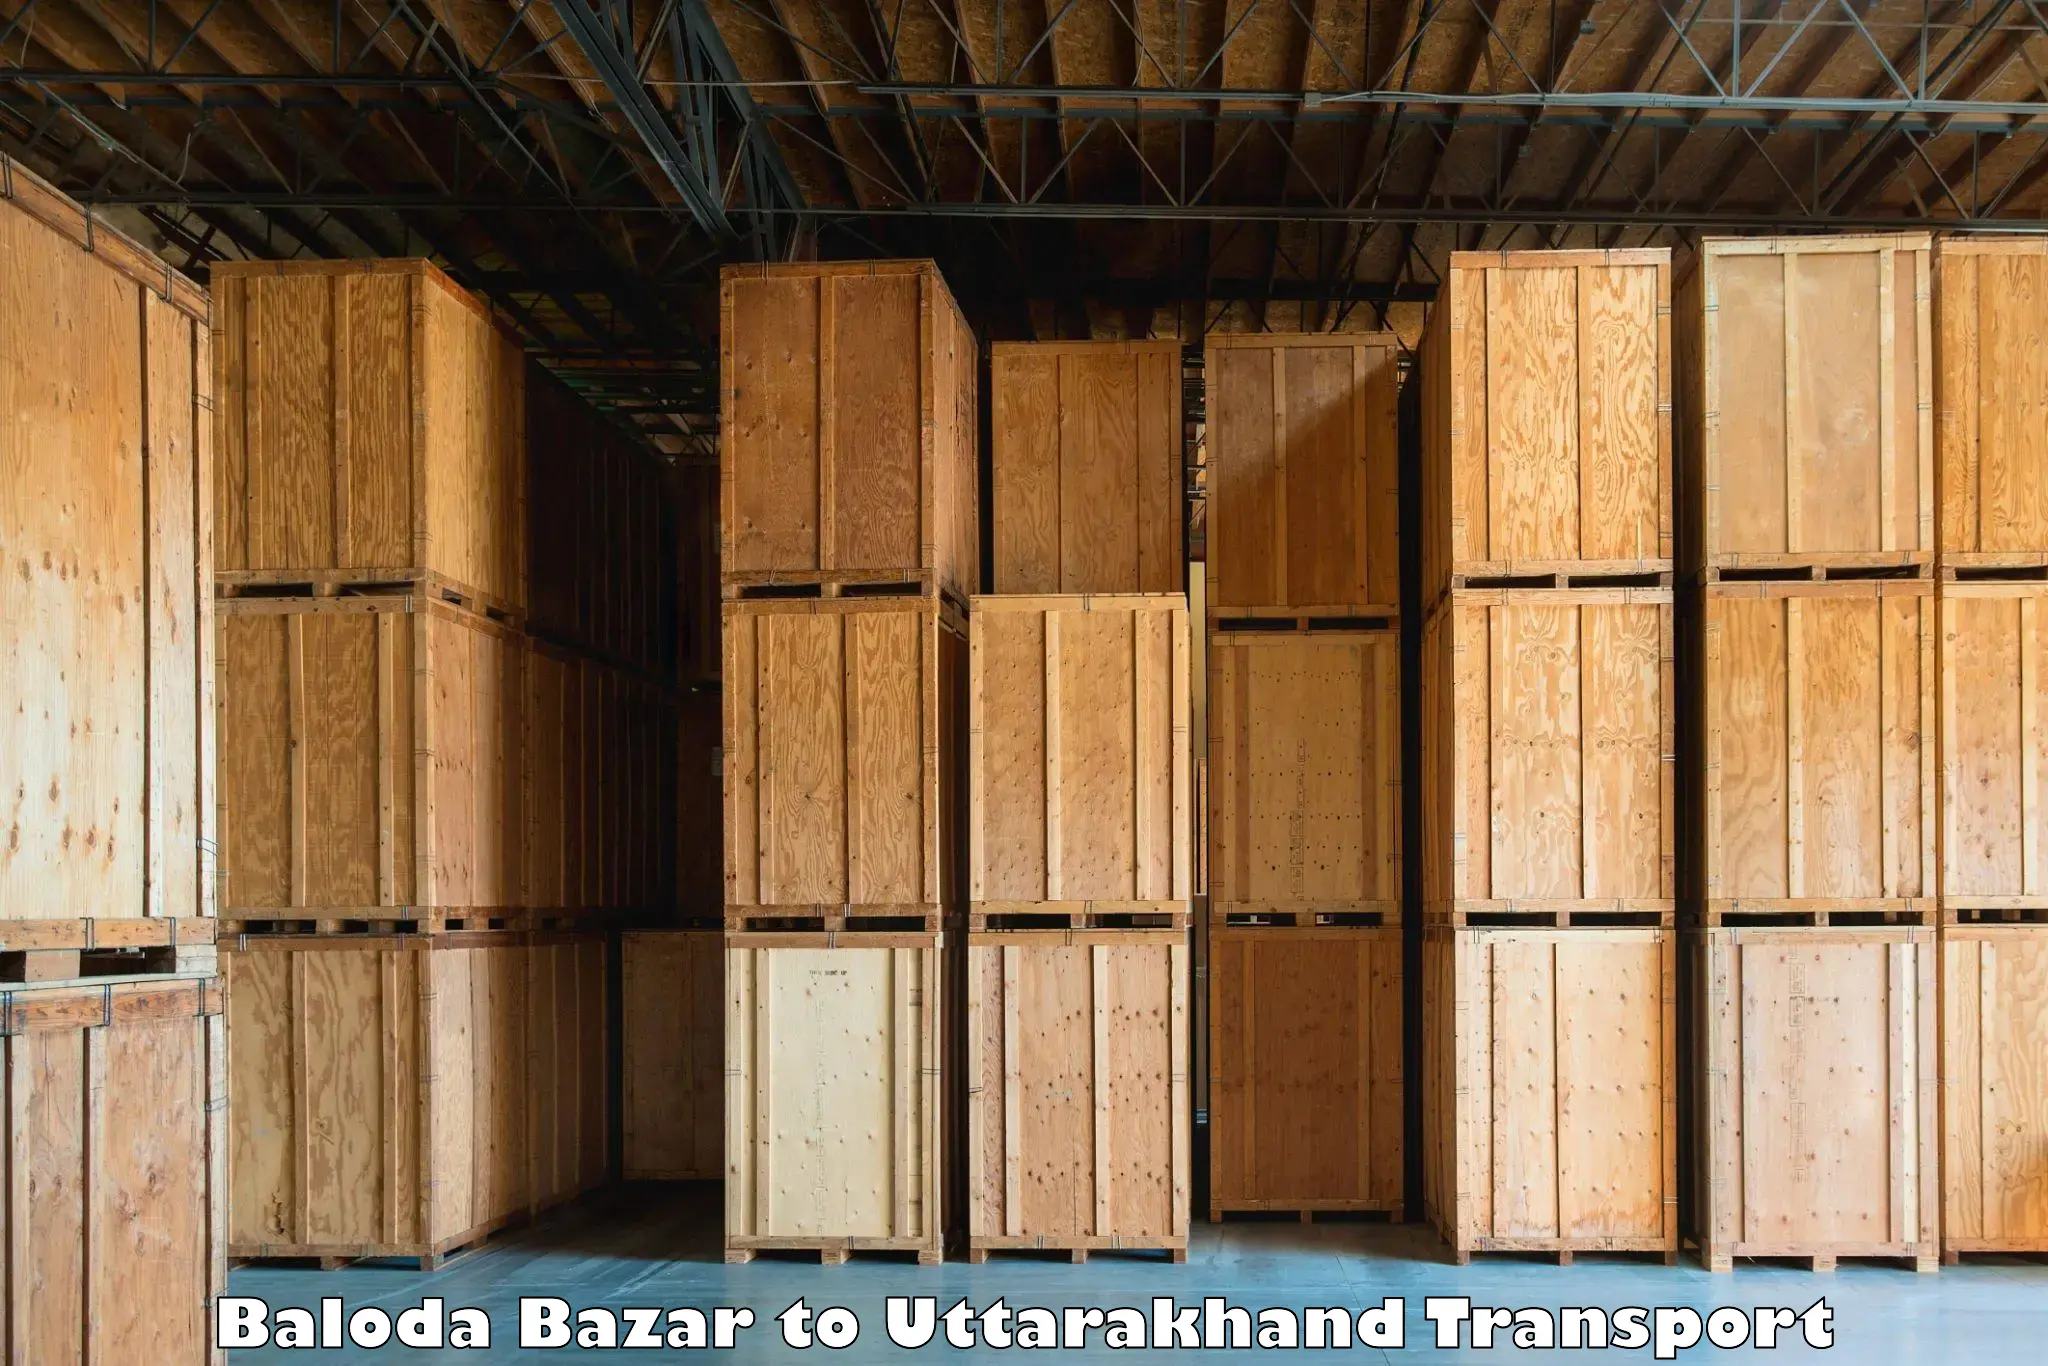 Nearby transport service Baloda Bazar to Dwarahat